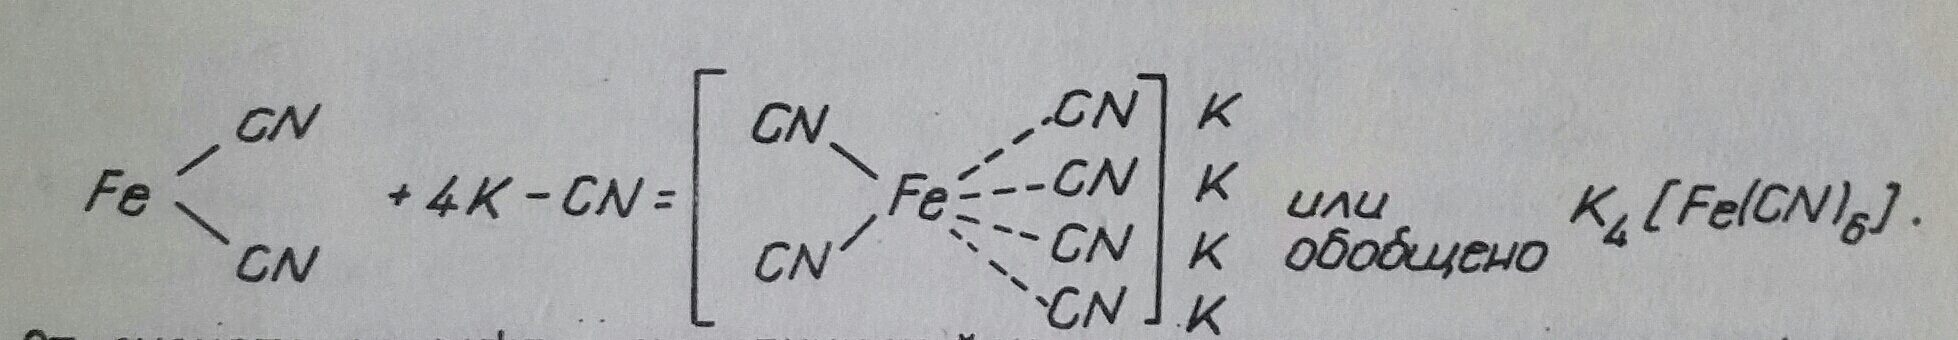 Химични съединения от комплекси